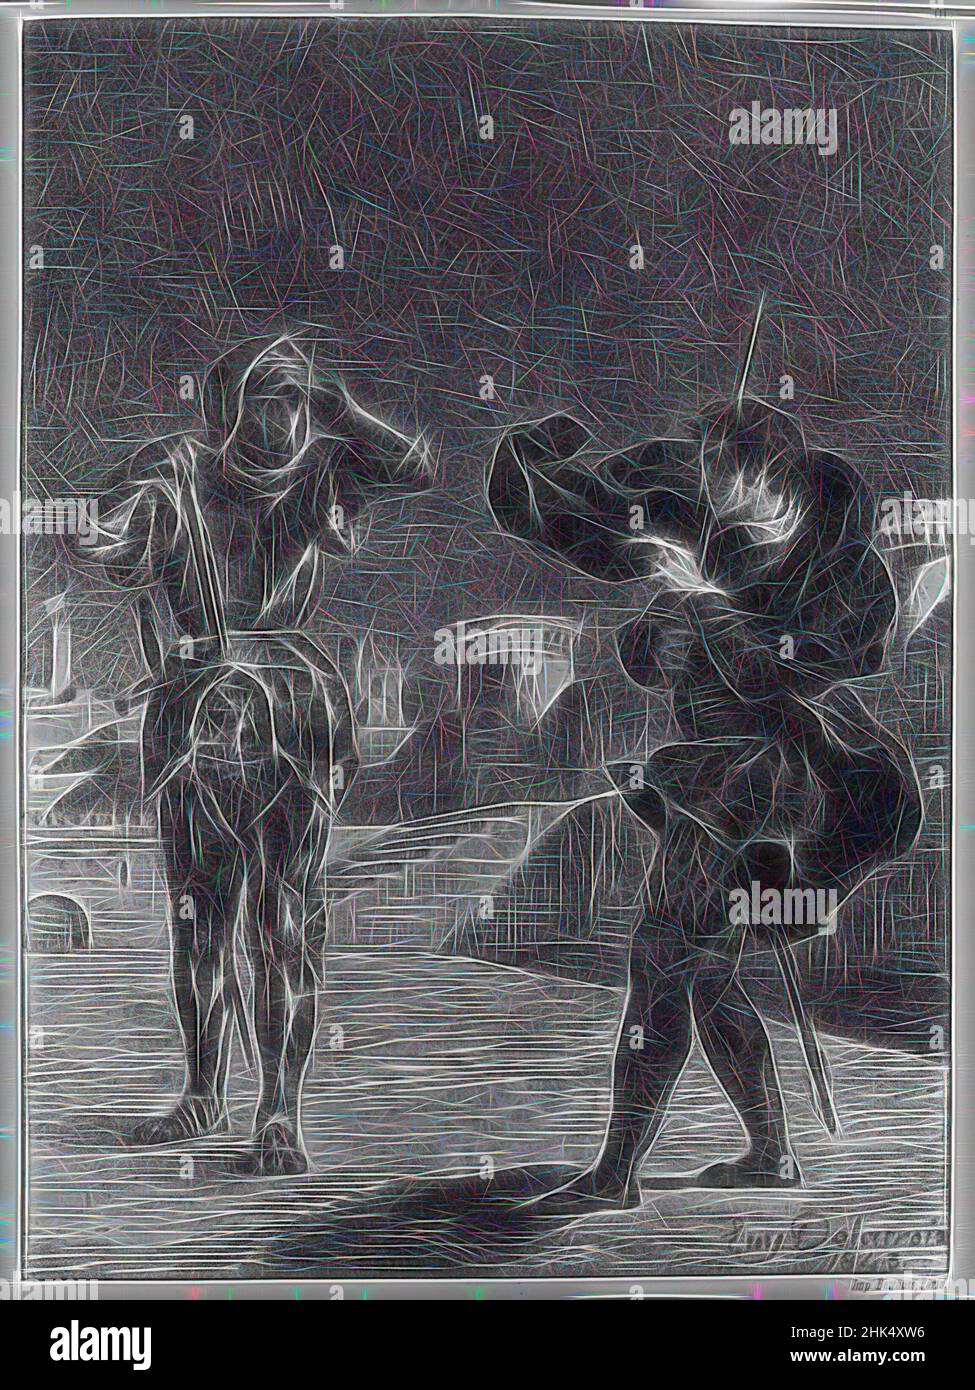 Inspiriert von The Phantom on the Terrace, Hamlet, Eugène Delacroix, Französisch, 1798-1863, Lithographie auf Papier mit Wove Arches, 1843, 10 3/8 x 7 5/8 Zoll, 26,4 x 19,4 cm, neu gestaltet von Artotop. Klassische Kunst neu erfunden mit einem modernen Twist. Design von warmen fröhlichen Leuchten der Helligkeit und Lichtstrahl Strahlkraft. Fotografie inspiriert von Surrealismus und Futurismus, umarmt dynamische Energie der modernen Technologie, Bewegung, Geschwindigkeit und Kultur zu revolutionieren Stockfoto